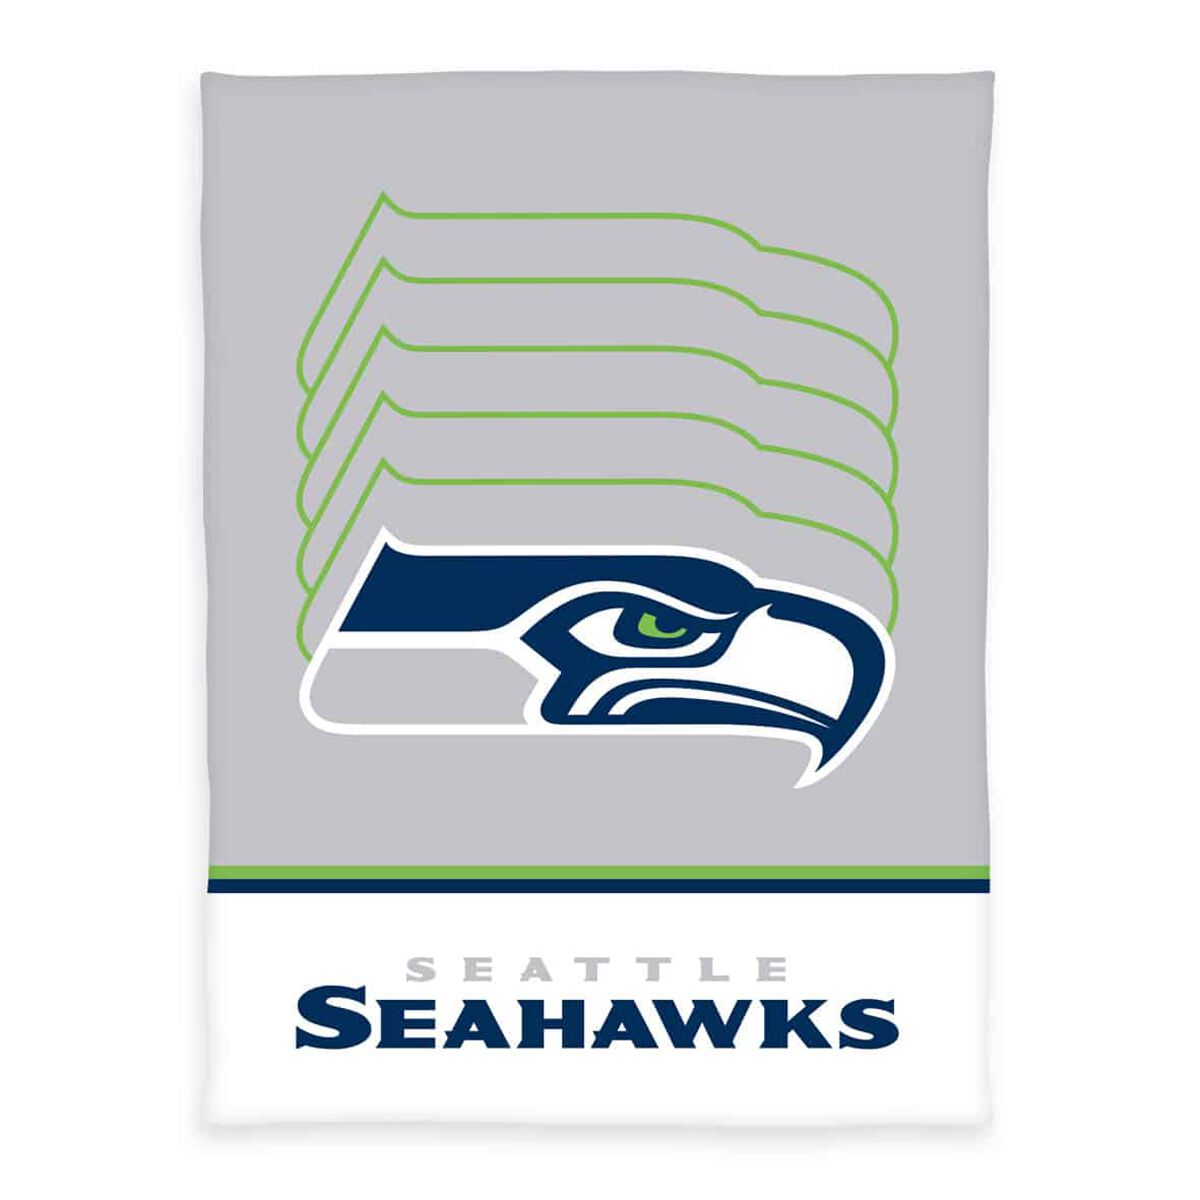 NFL Seattle Seahawks - Flauschdecke Decke multicolor